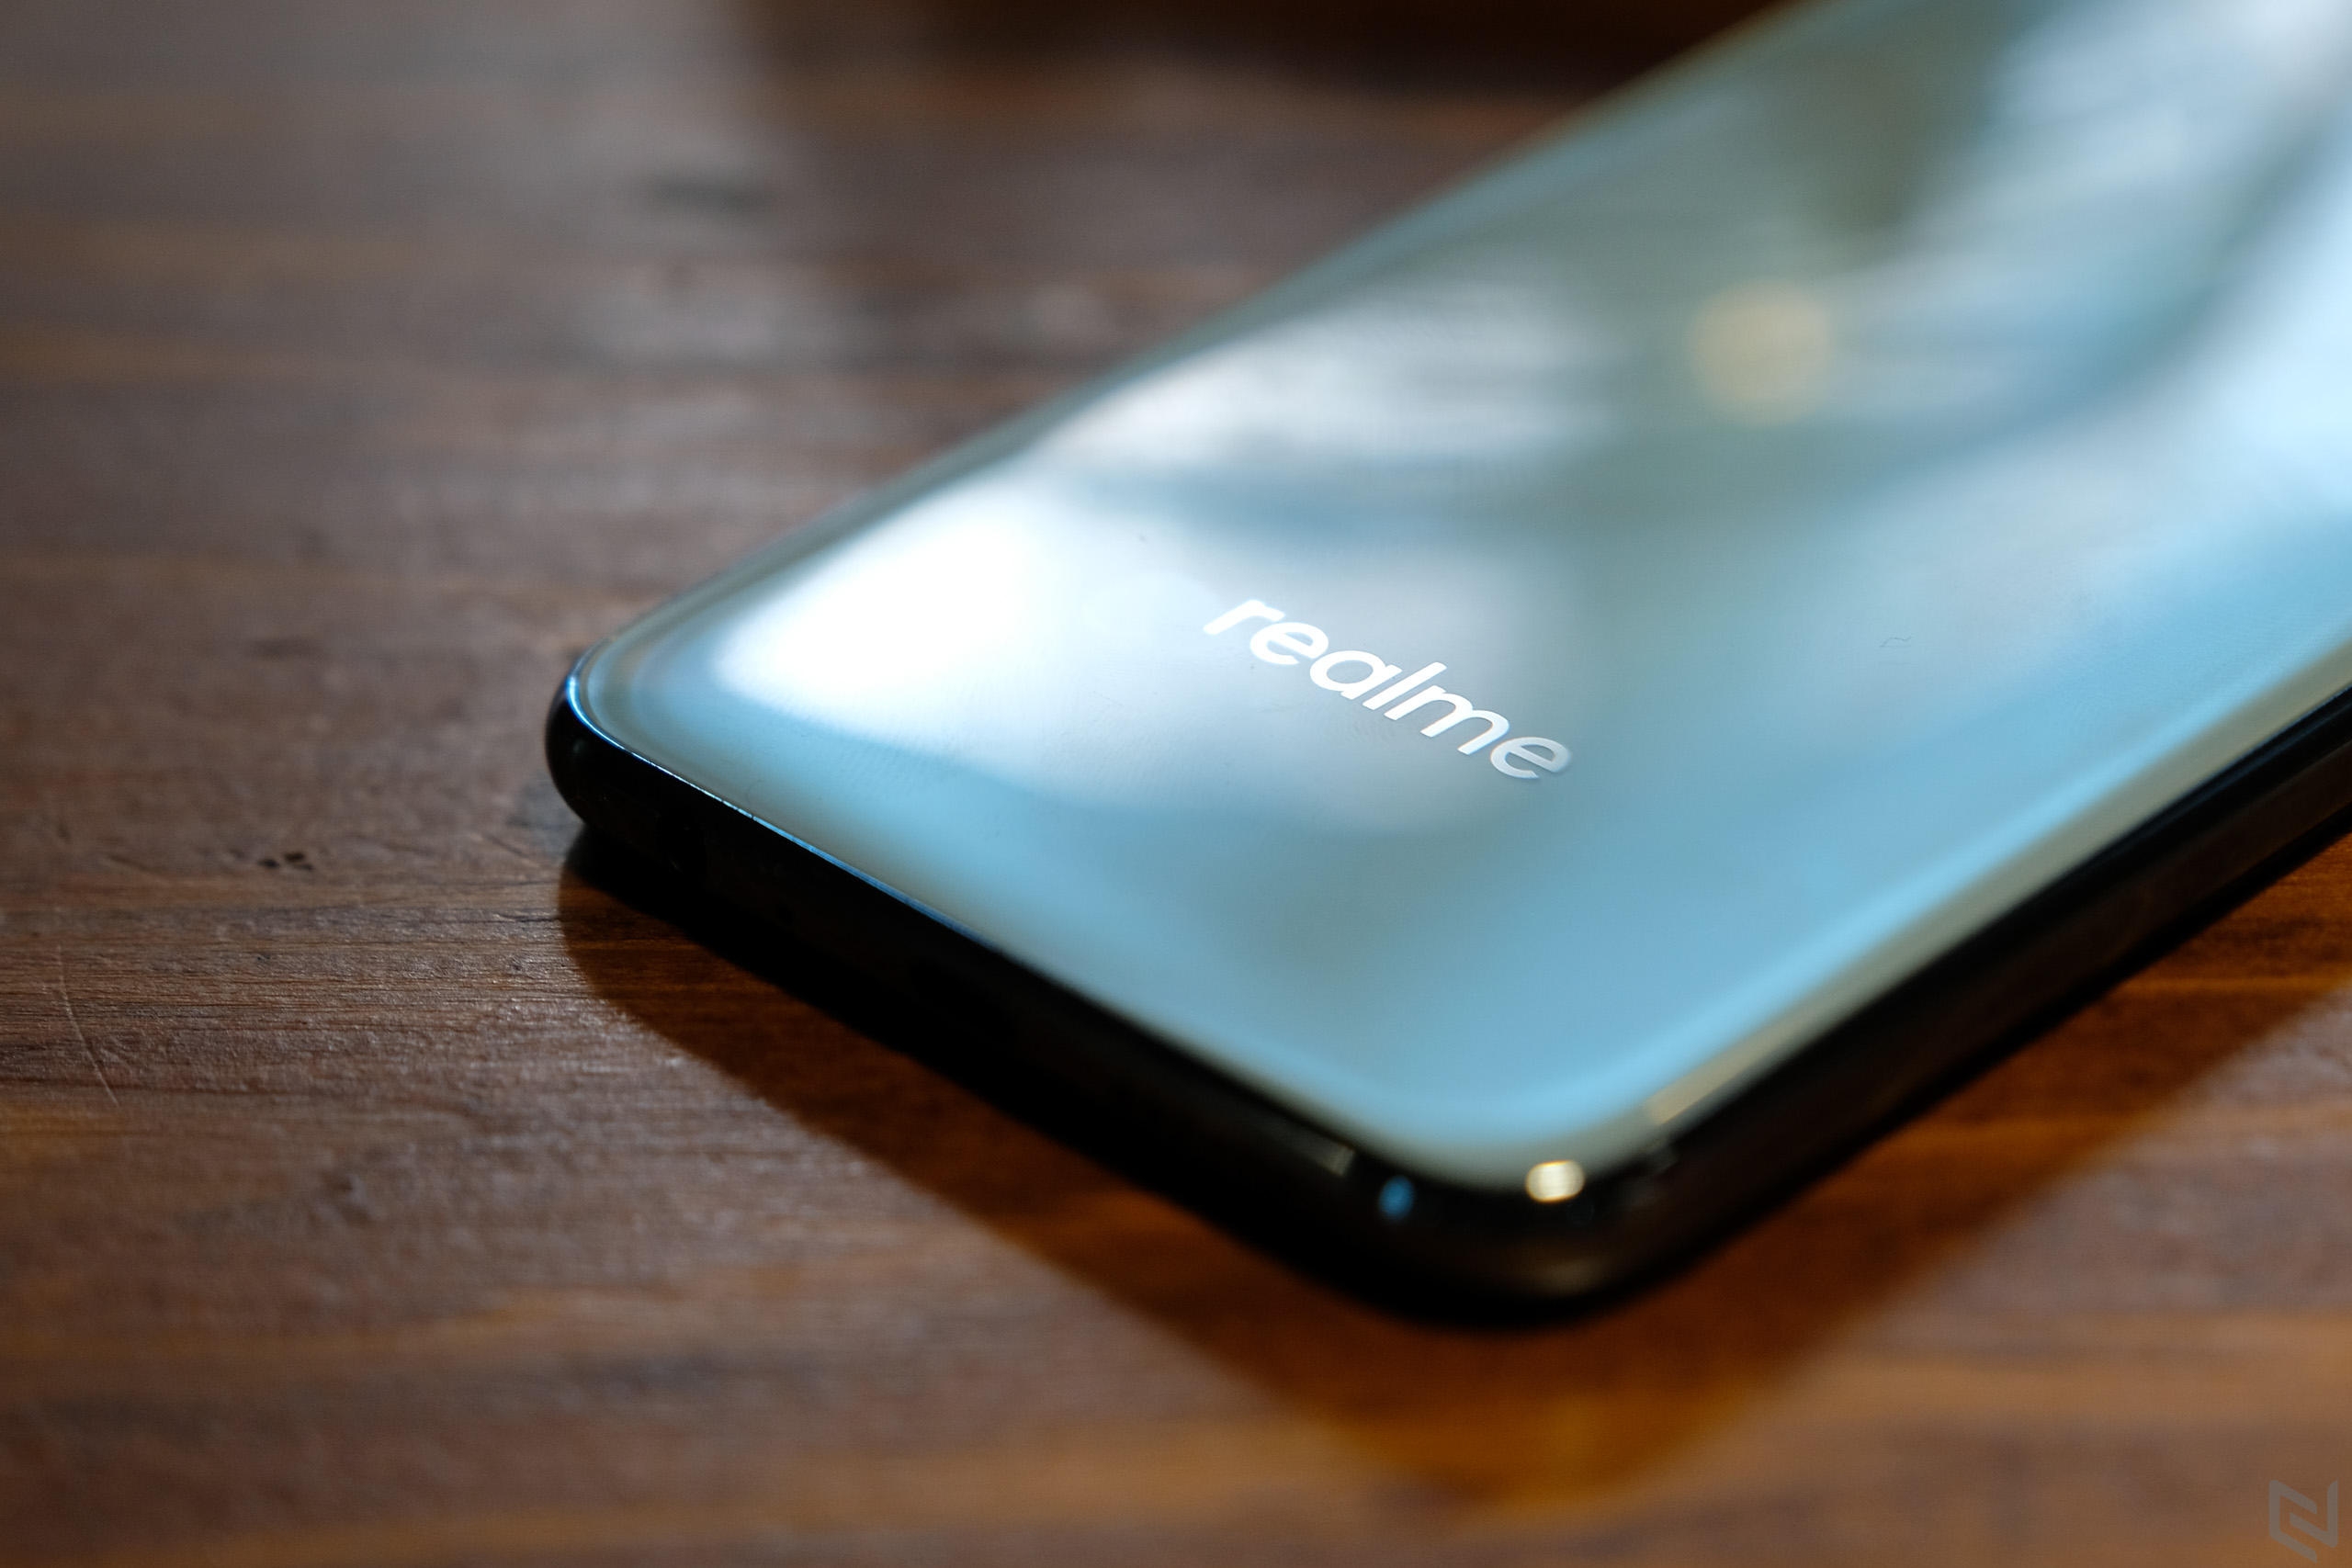 Đánh giá Realme 2 Pro: Bản sao của Oppo F9 nhưng đáng mua hơn rất nhiều